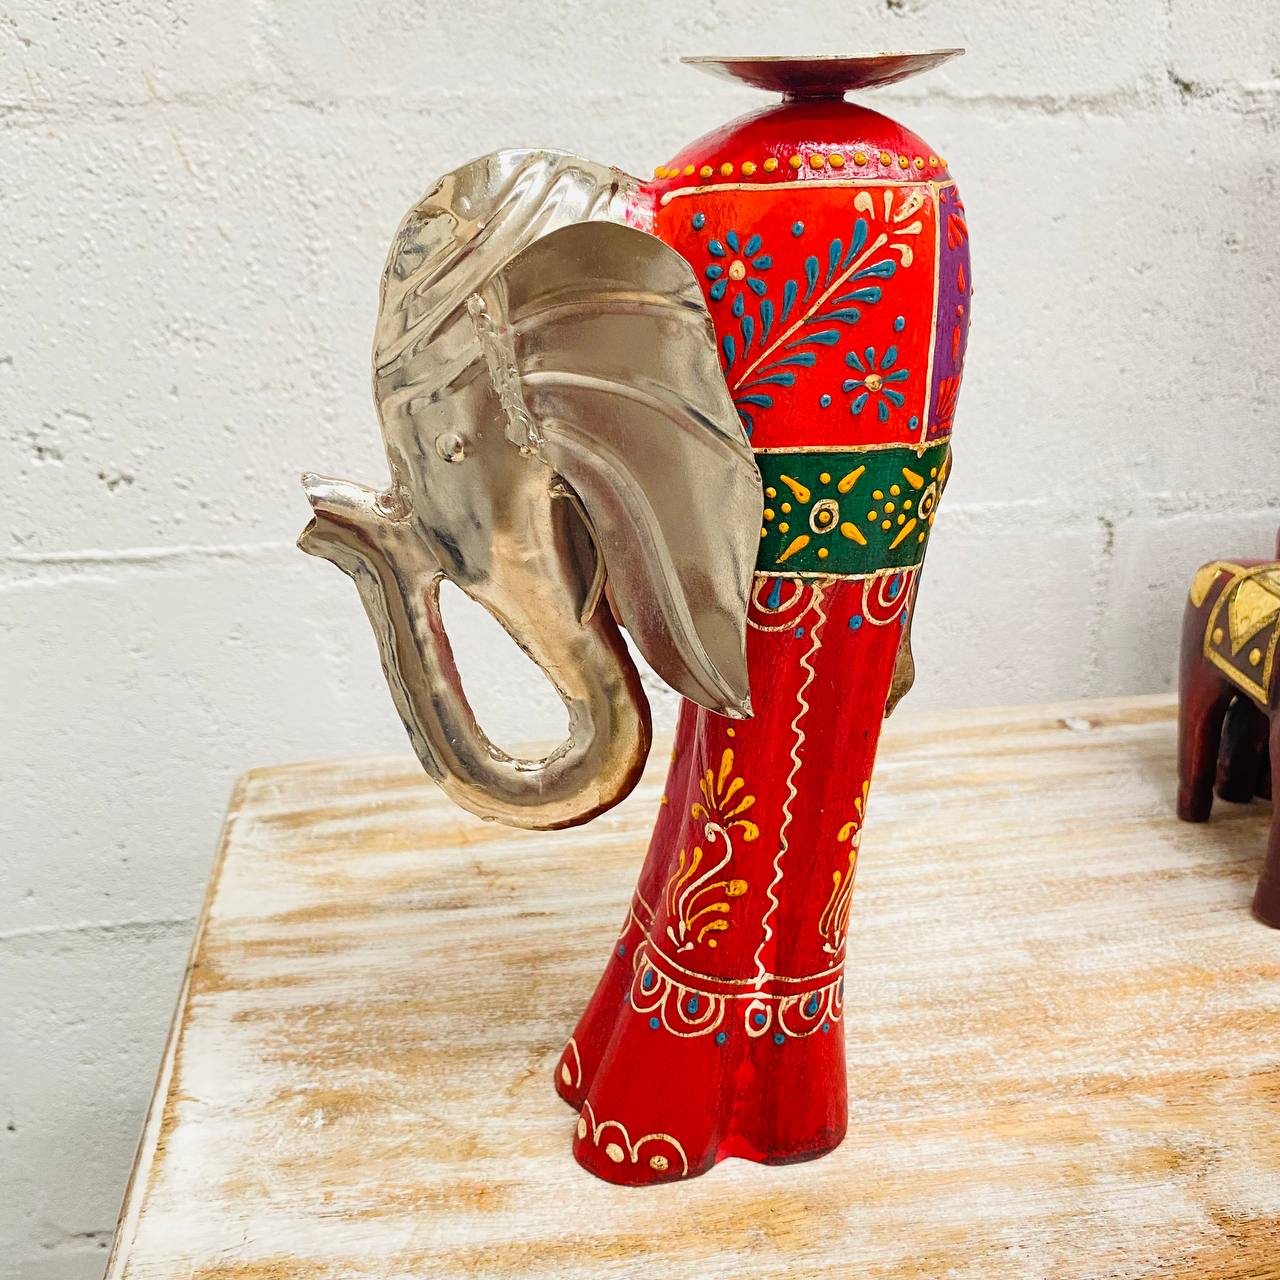 Portavelas "Elegancia Elefante" - Madera y Metal Tallado, Diseño Pintado a Mano con Base para Vela